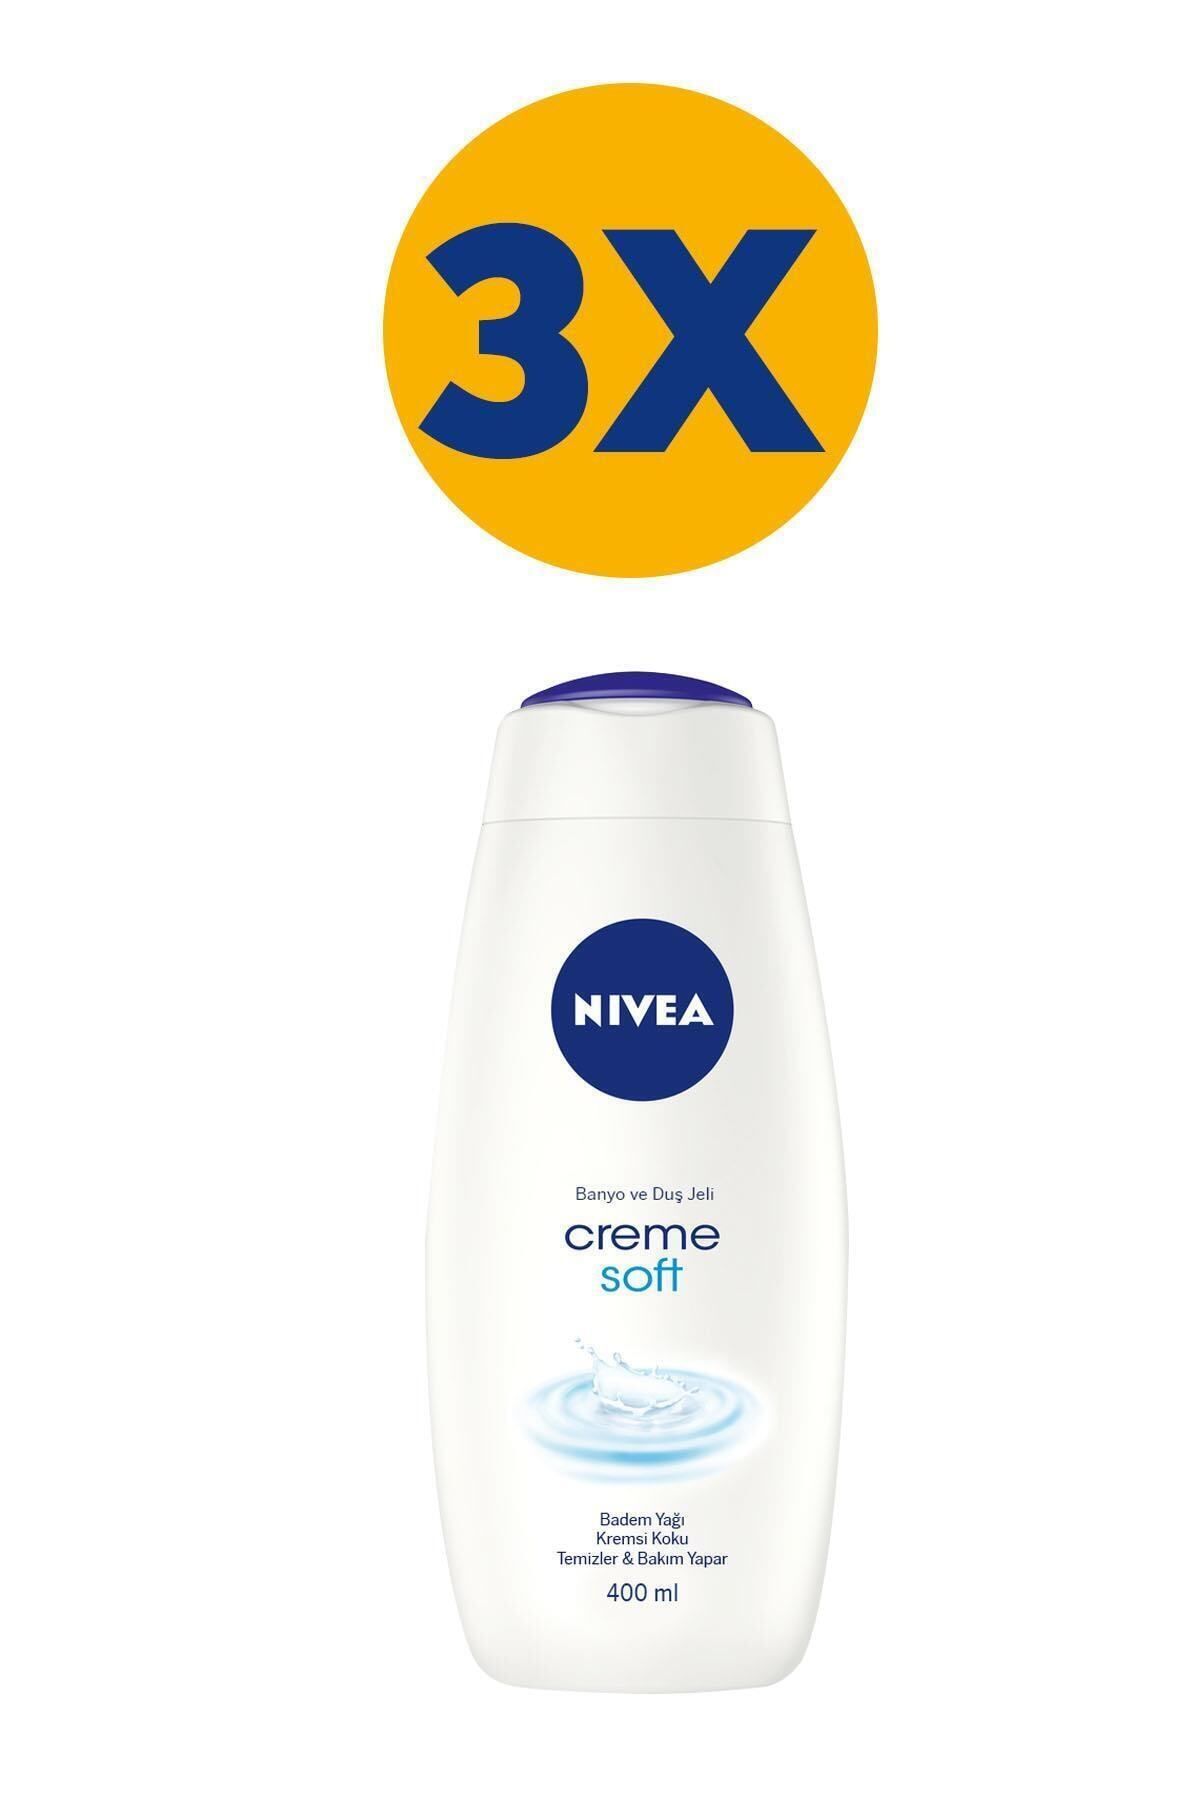 NIVEA Creme Soft Kremsi Dokunuş Banyo Ve Duş Jeli 400mlx3